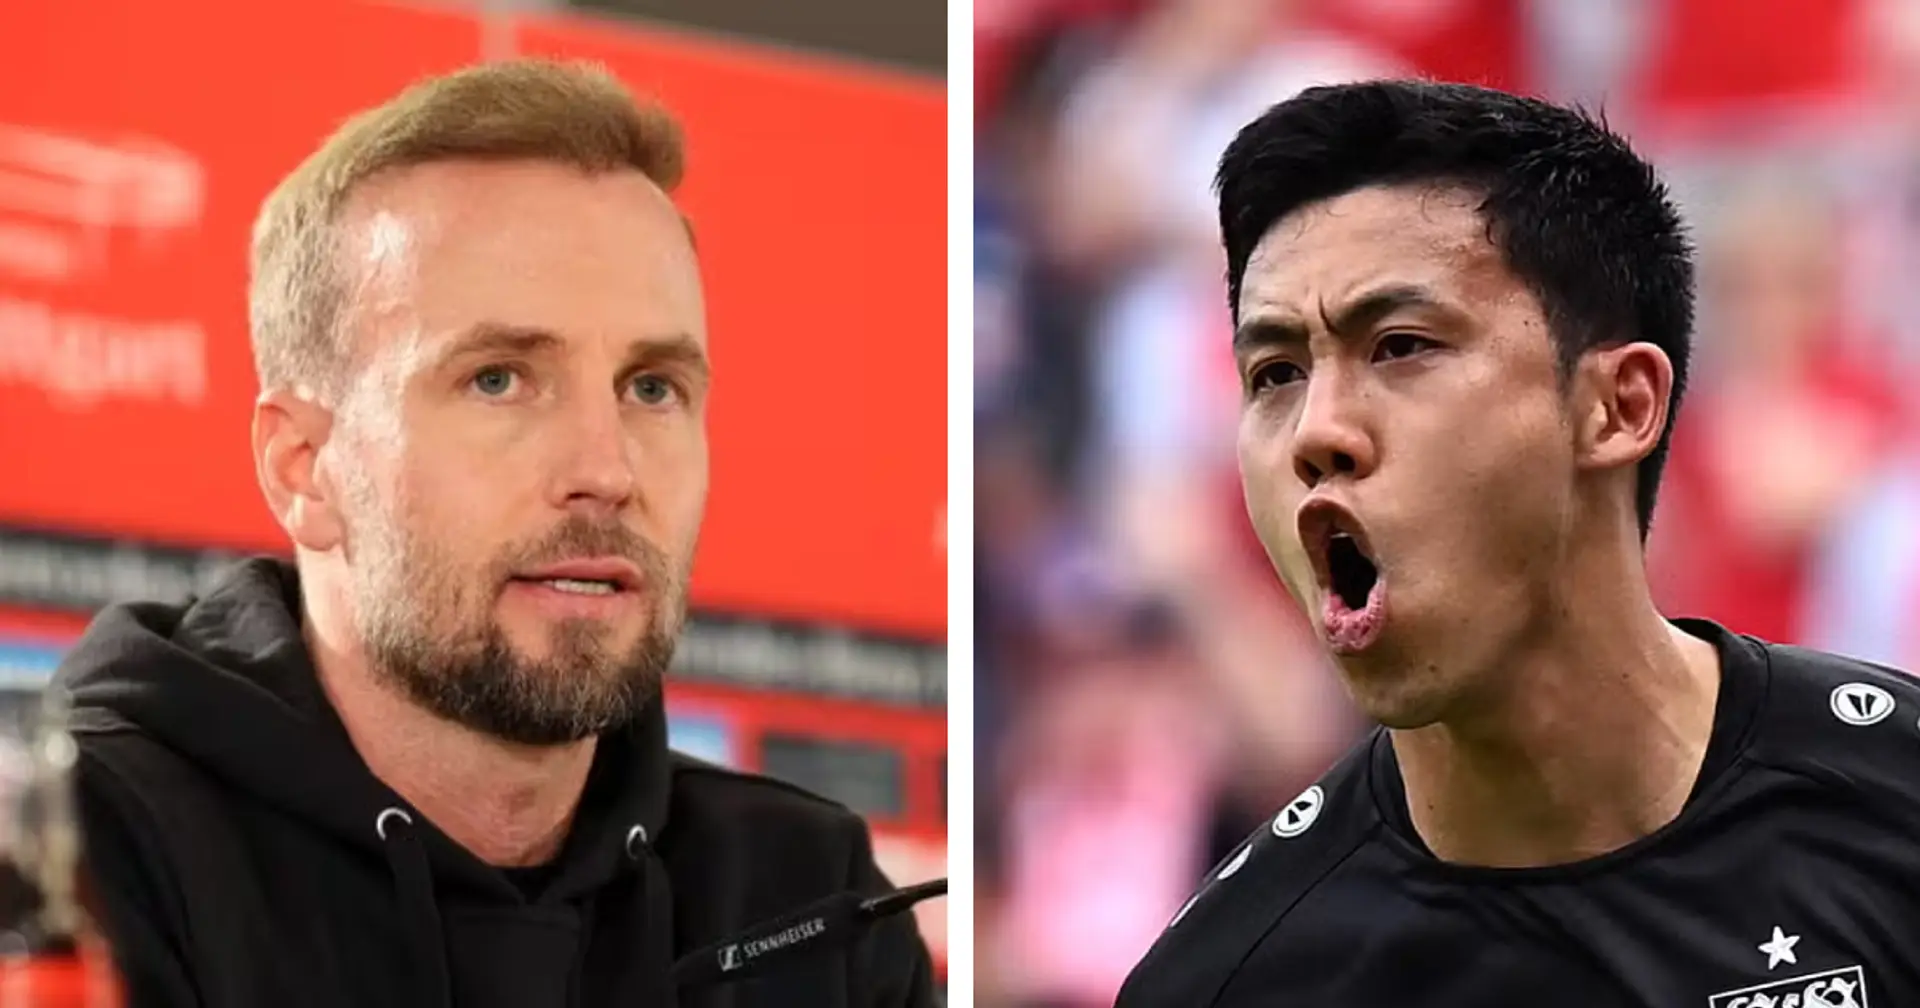 'I'm not thrilled': Stuttgart head coach confirms Wataru Endo deal progress